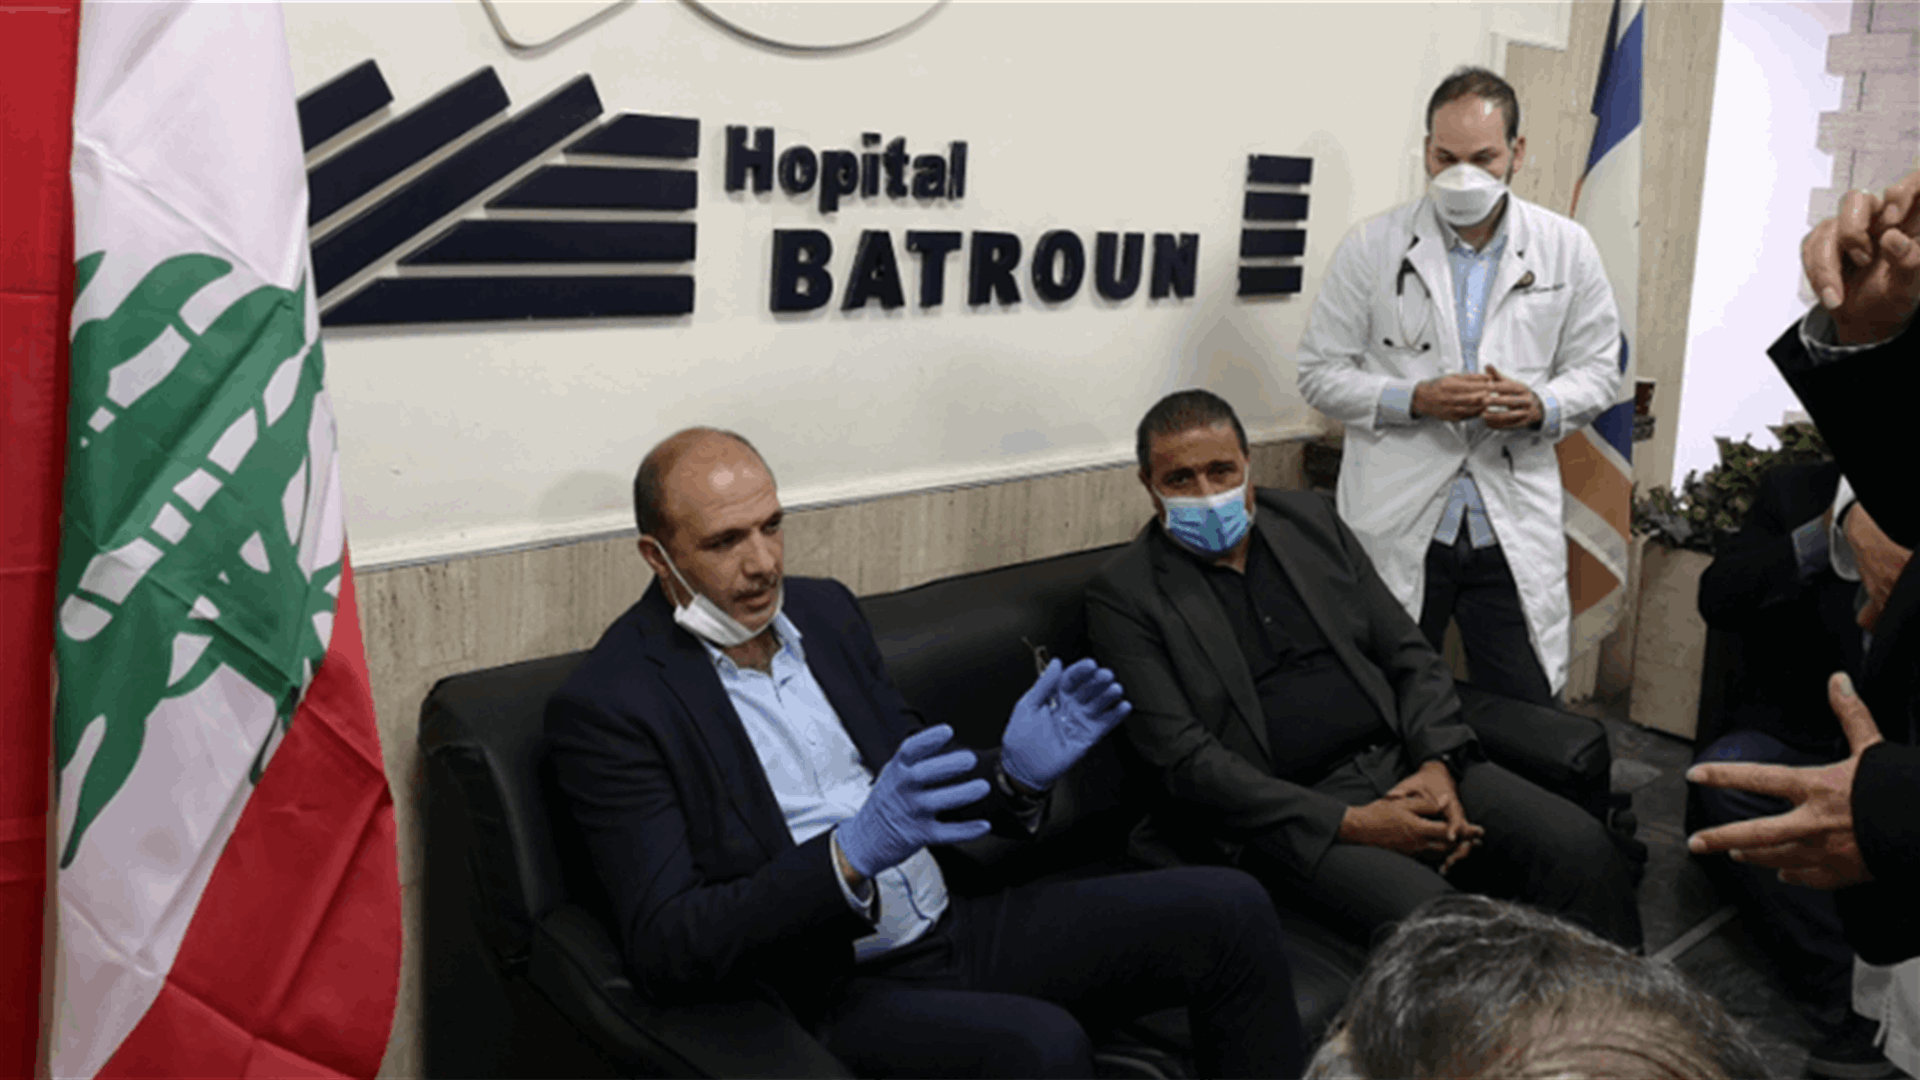 وزير الصحة اختتم جولته الشمالية بتفقد مستشفى البترون: بانتظارنا أسبوعين لمواجهة الوباء ومحاصرته